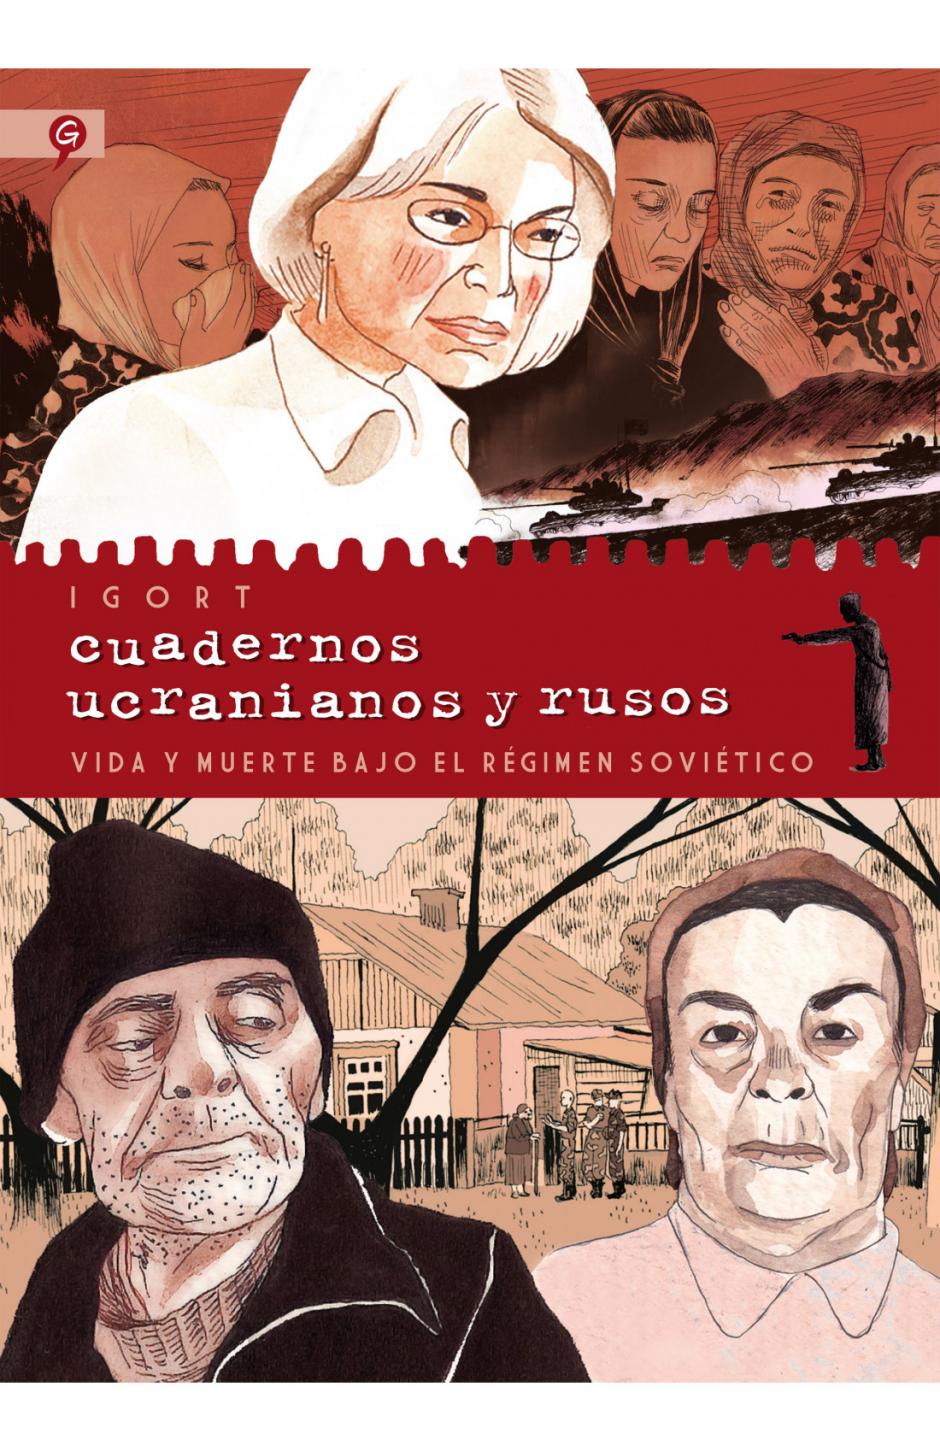 En Cuadernos ucranianos y rusos, Iglort relató la tragedia del 'Holodomor' y, años después incluyó en la historia gráfica el asesinato de Anna Politkóvskaya en 2006 y la guerra de Chechenia